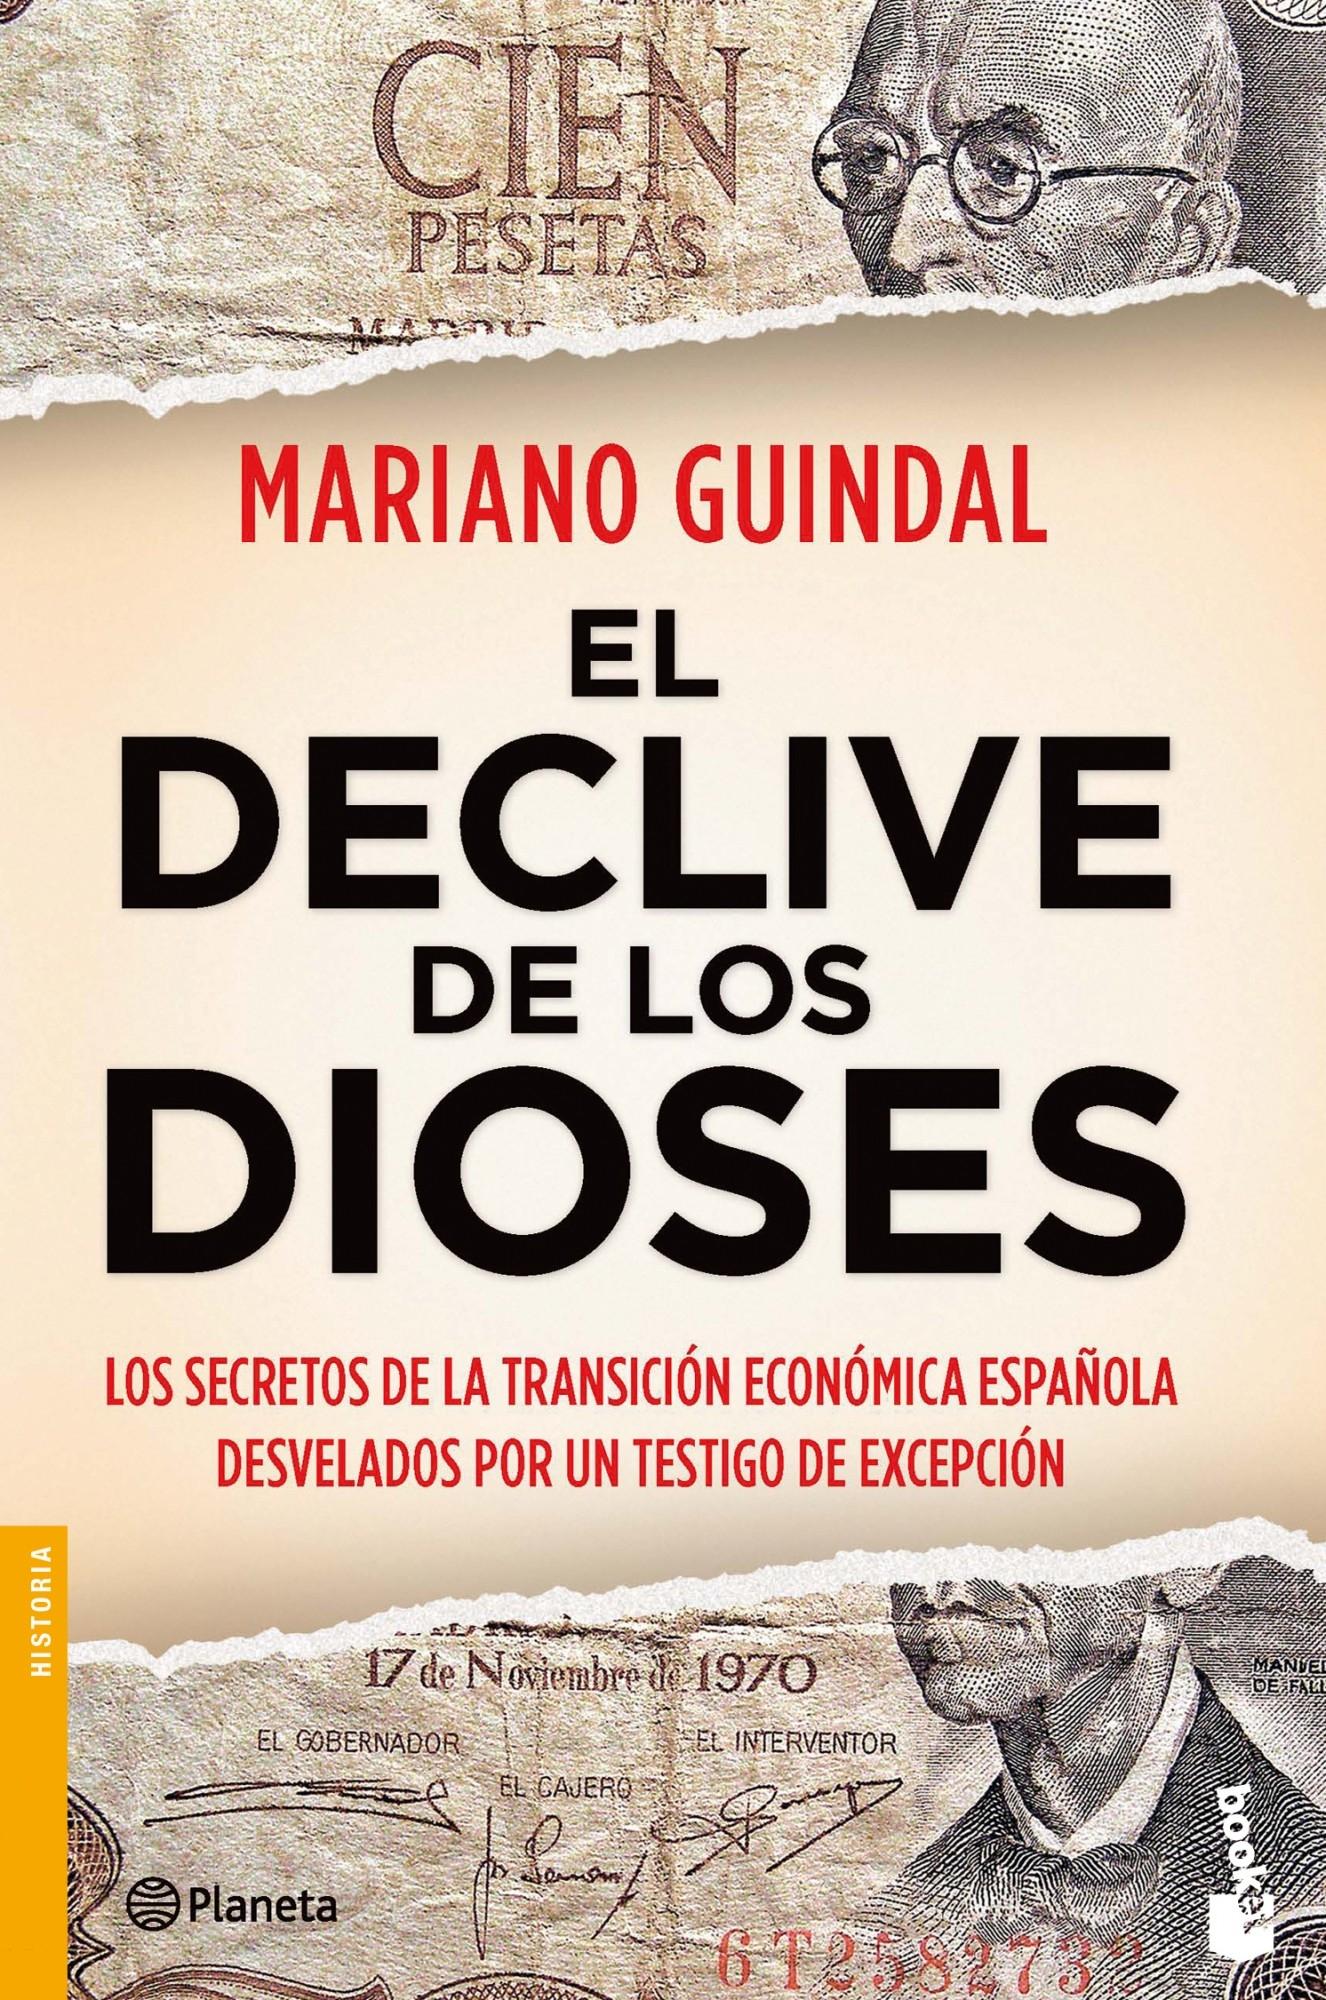 El declive de los dioses "Los secretos de la transición económica española desvelados por un testigo de excepción". 